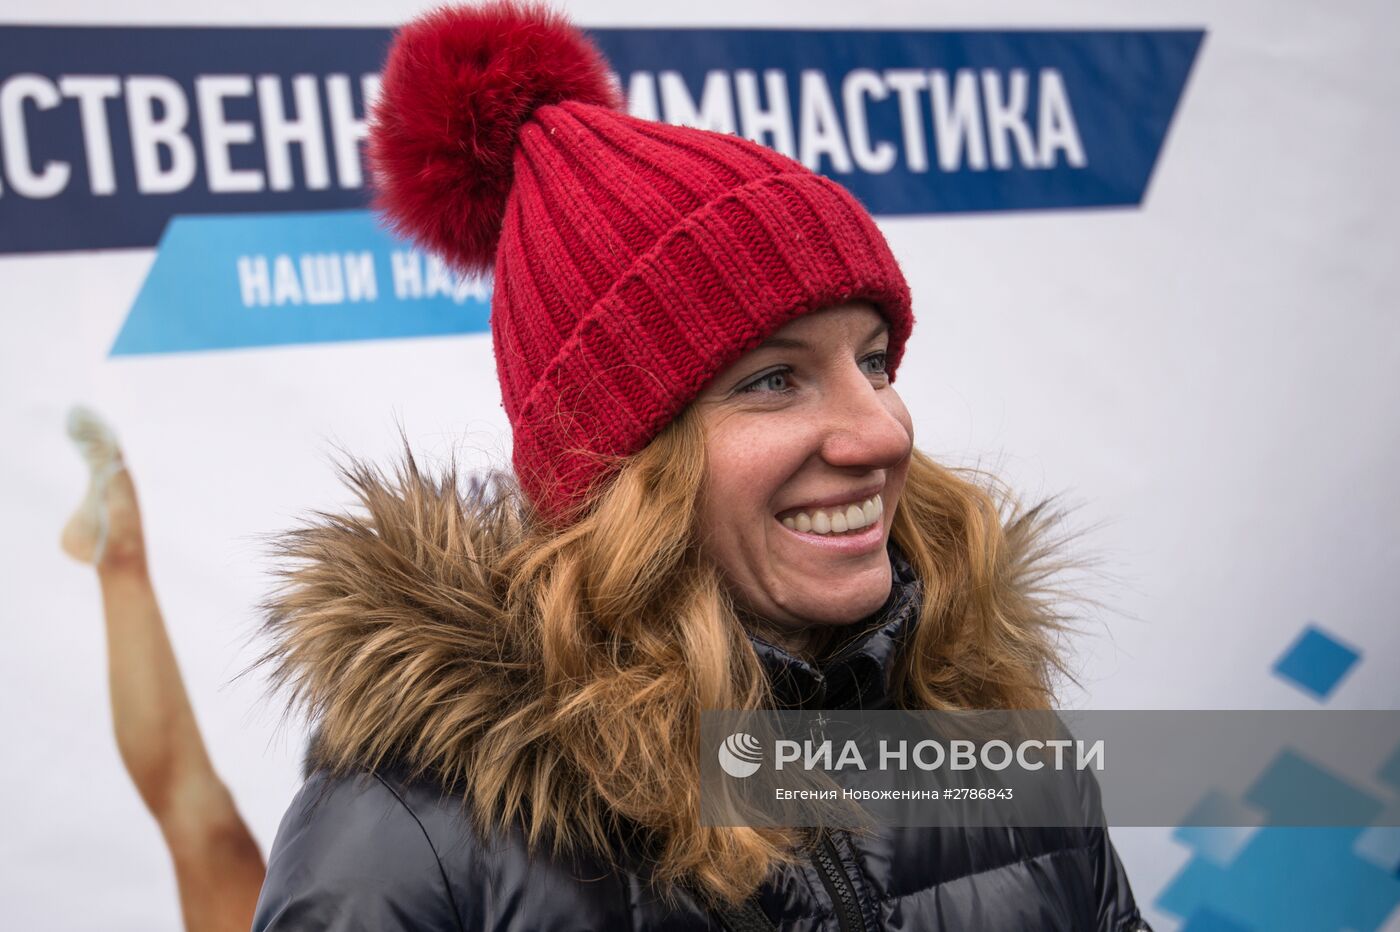 День зимних видов спорта в Москве